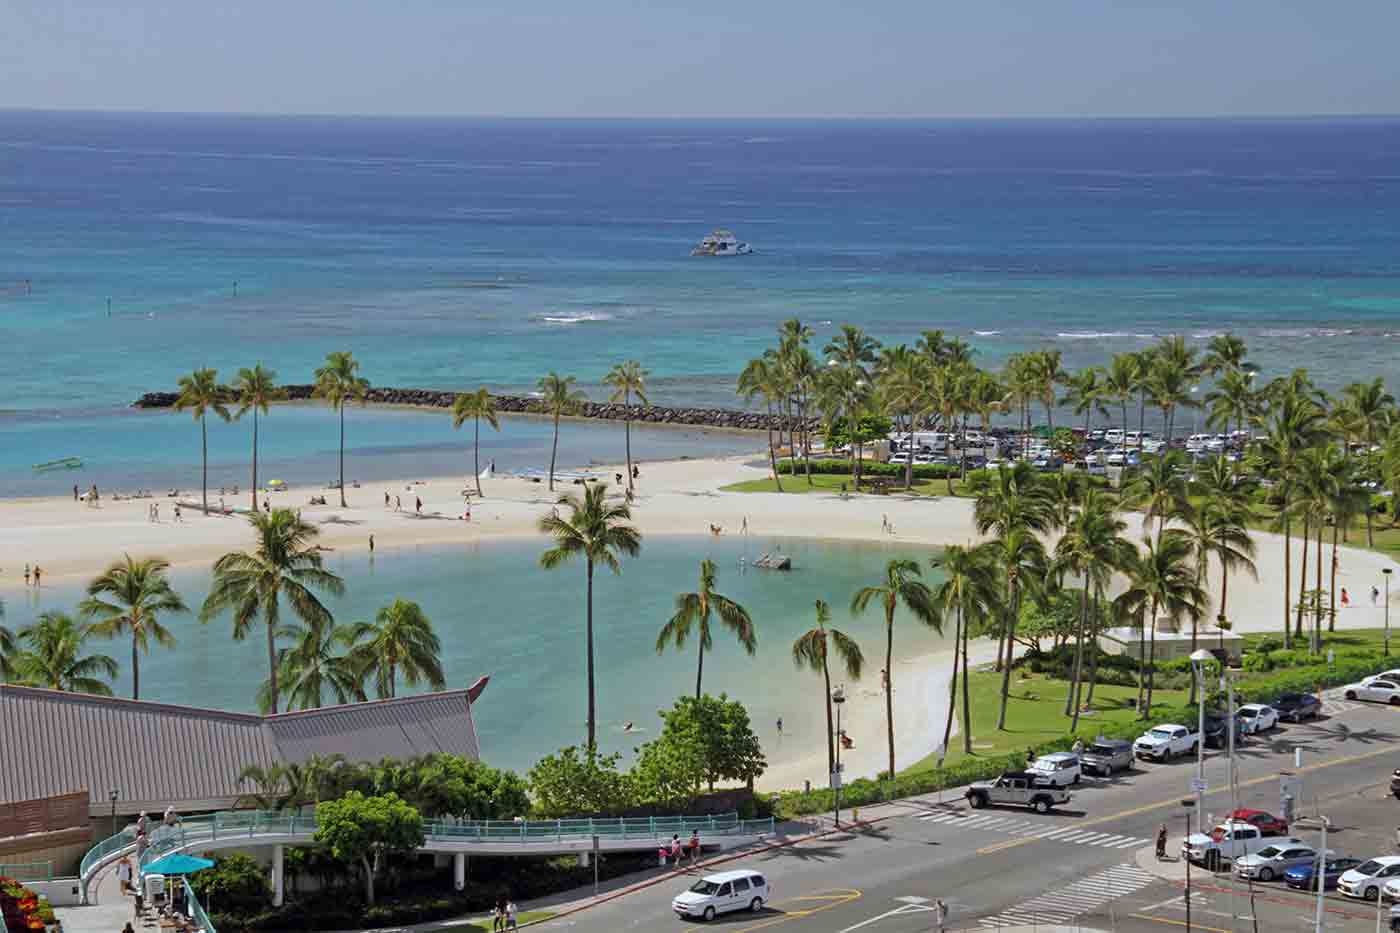 Honolulu Beaches